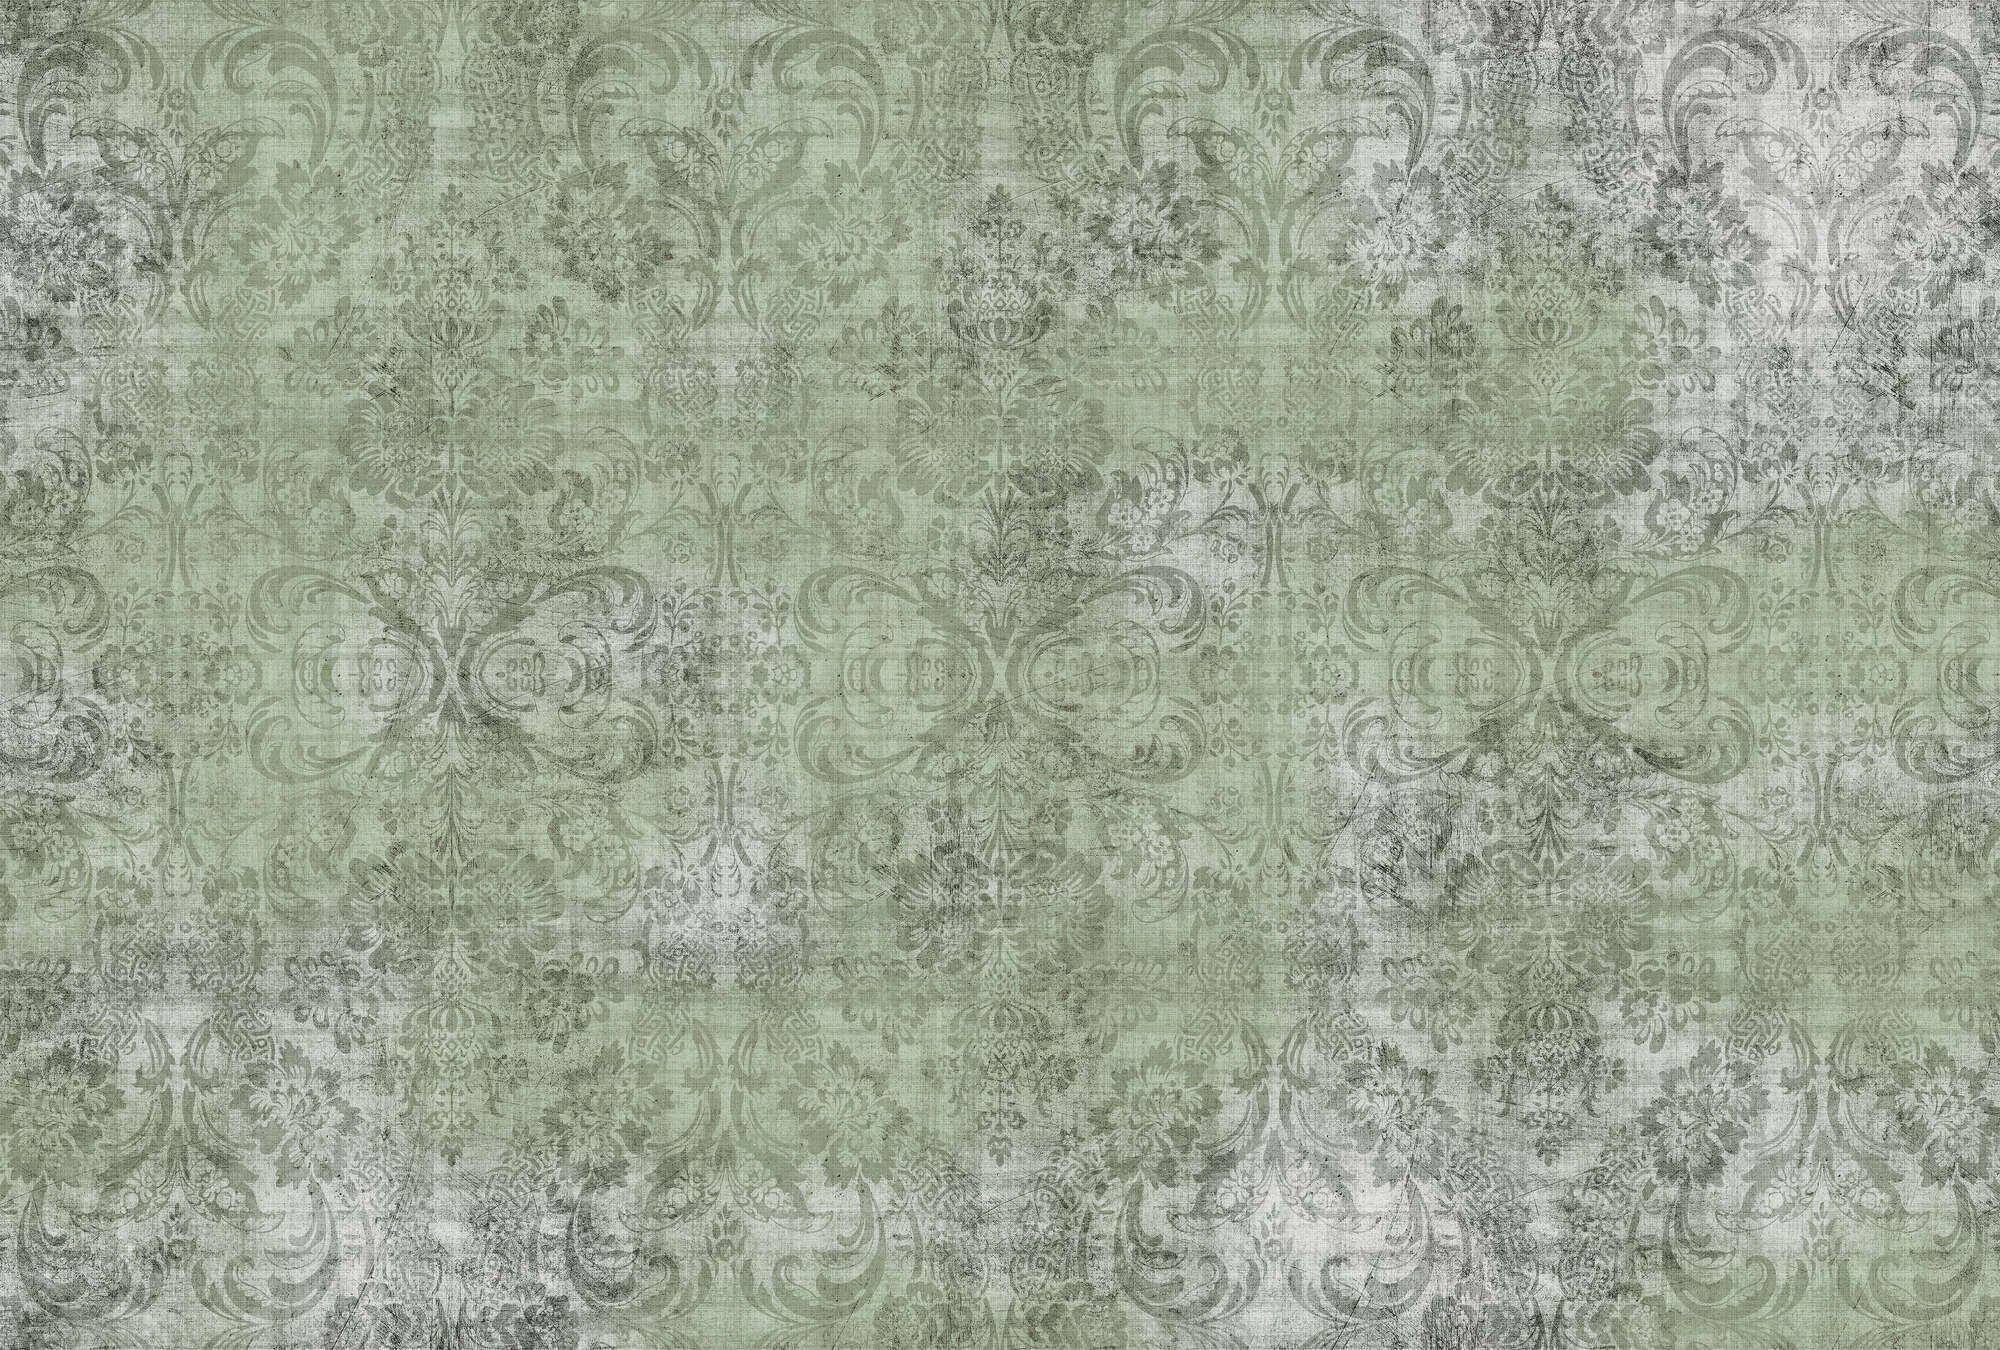             Old damask 2 - Ornements sur papier peint vert chiné - À structure lin naturel - Vert | Nacré intissé lisse
        